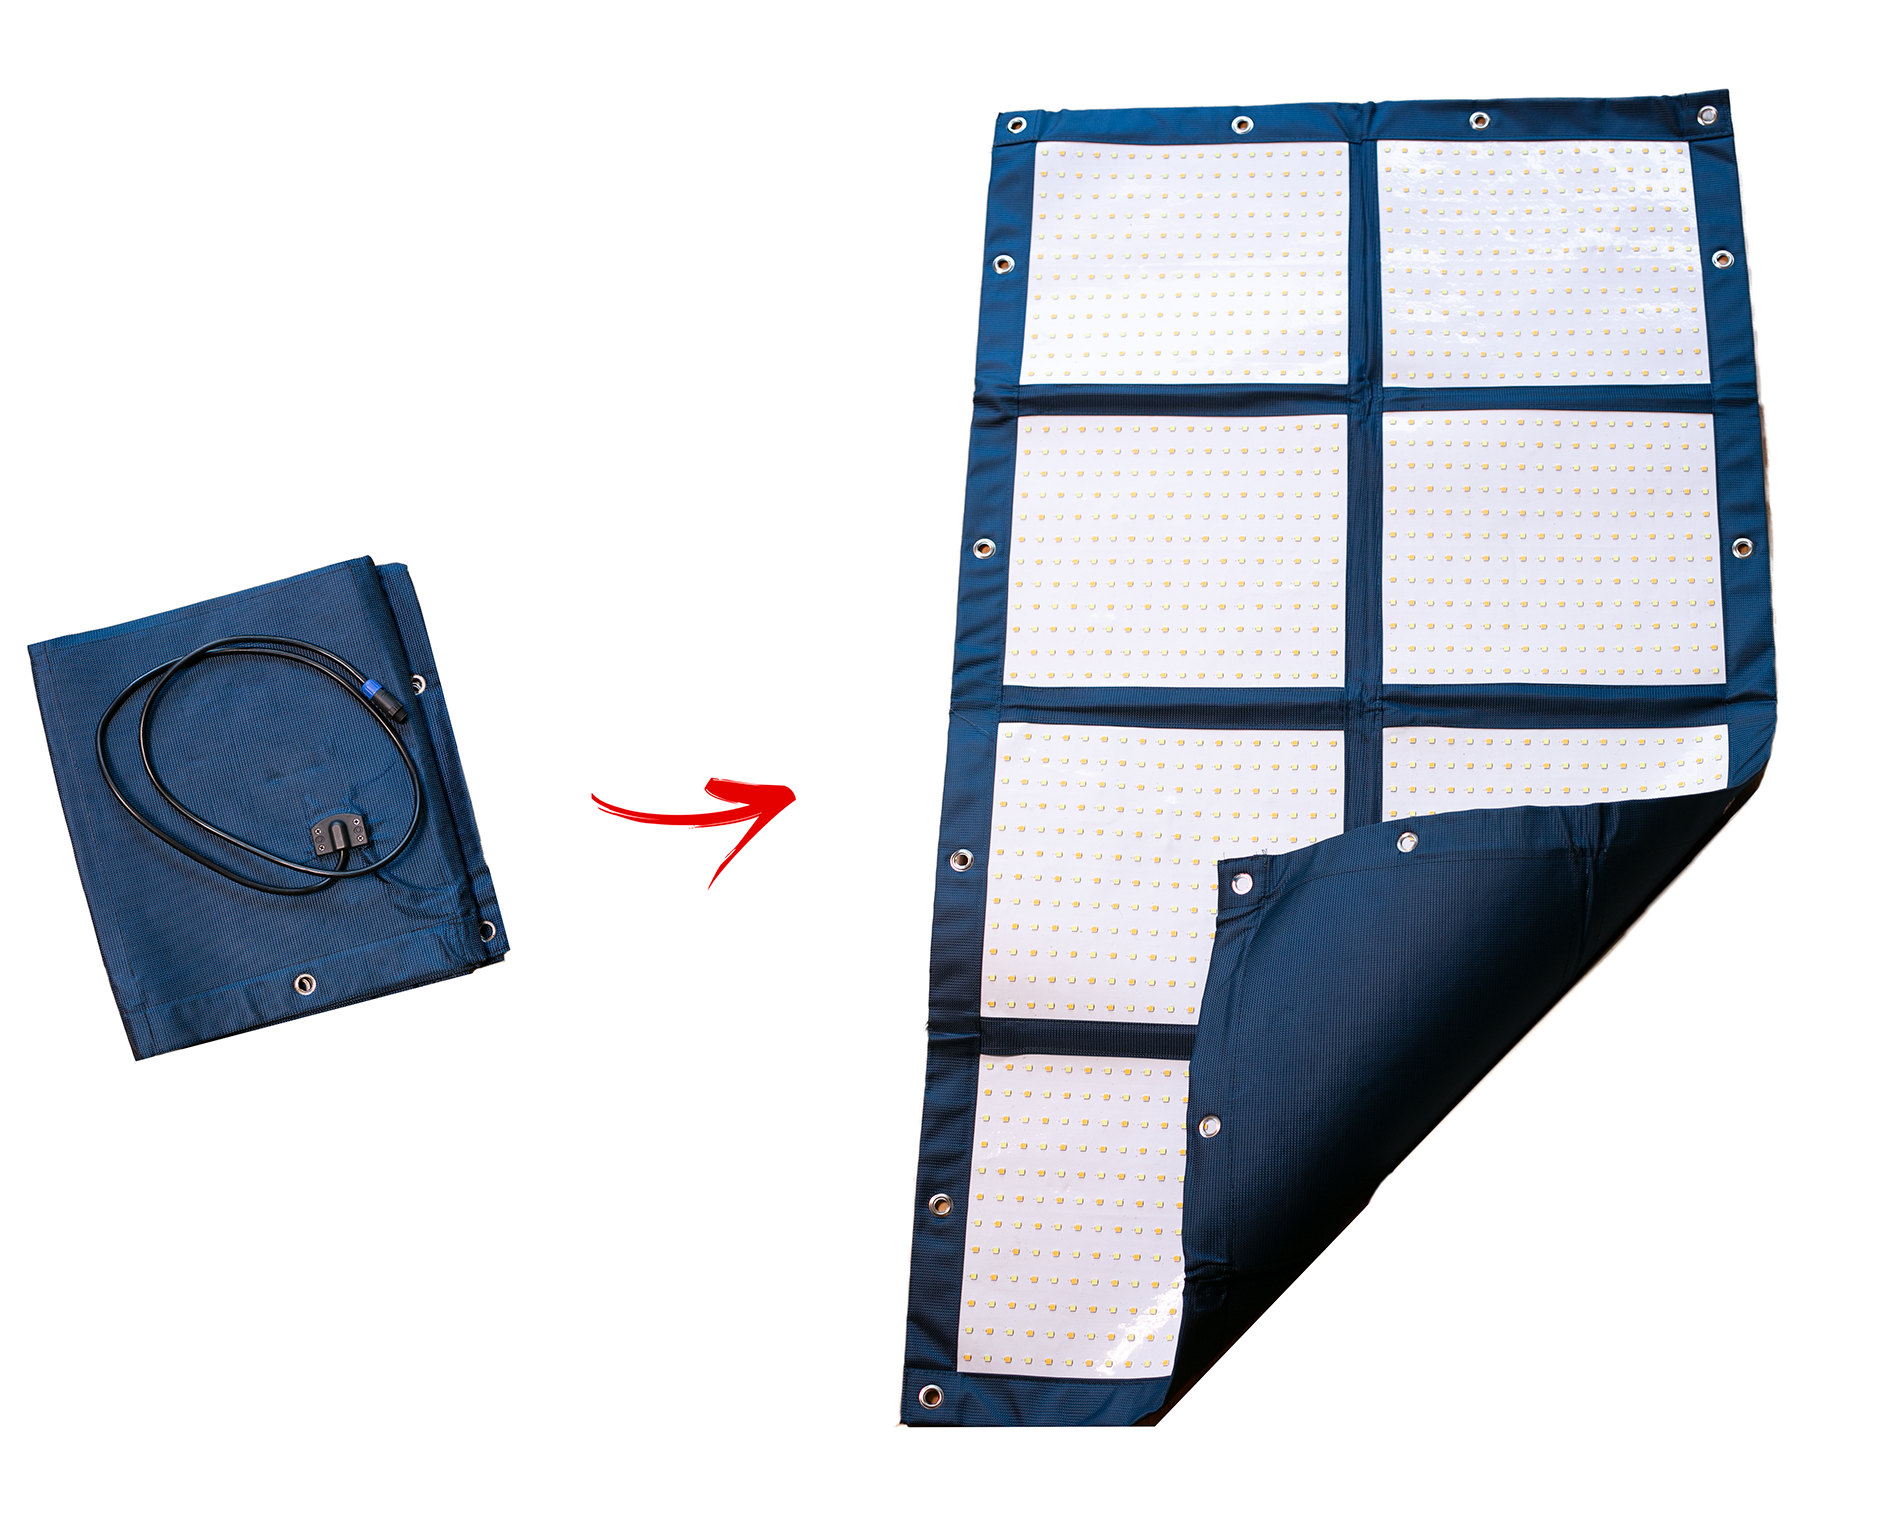 MEGA-LiteCloth 2.0 | 3'x4.5' Foldable LED Mat Kit